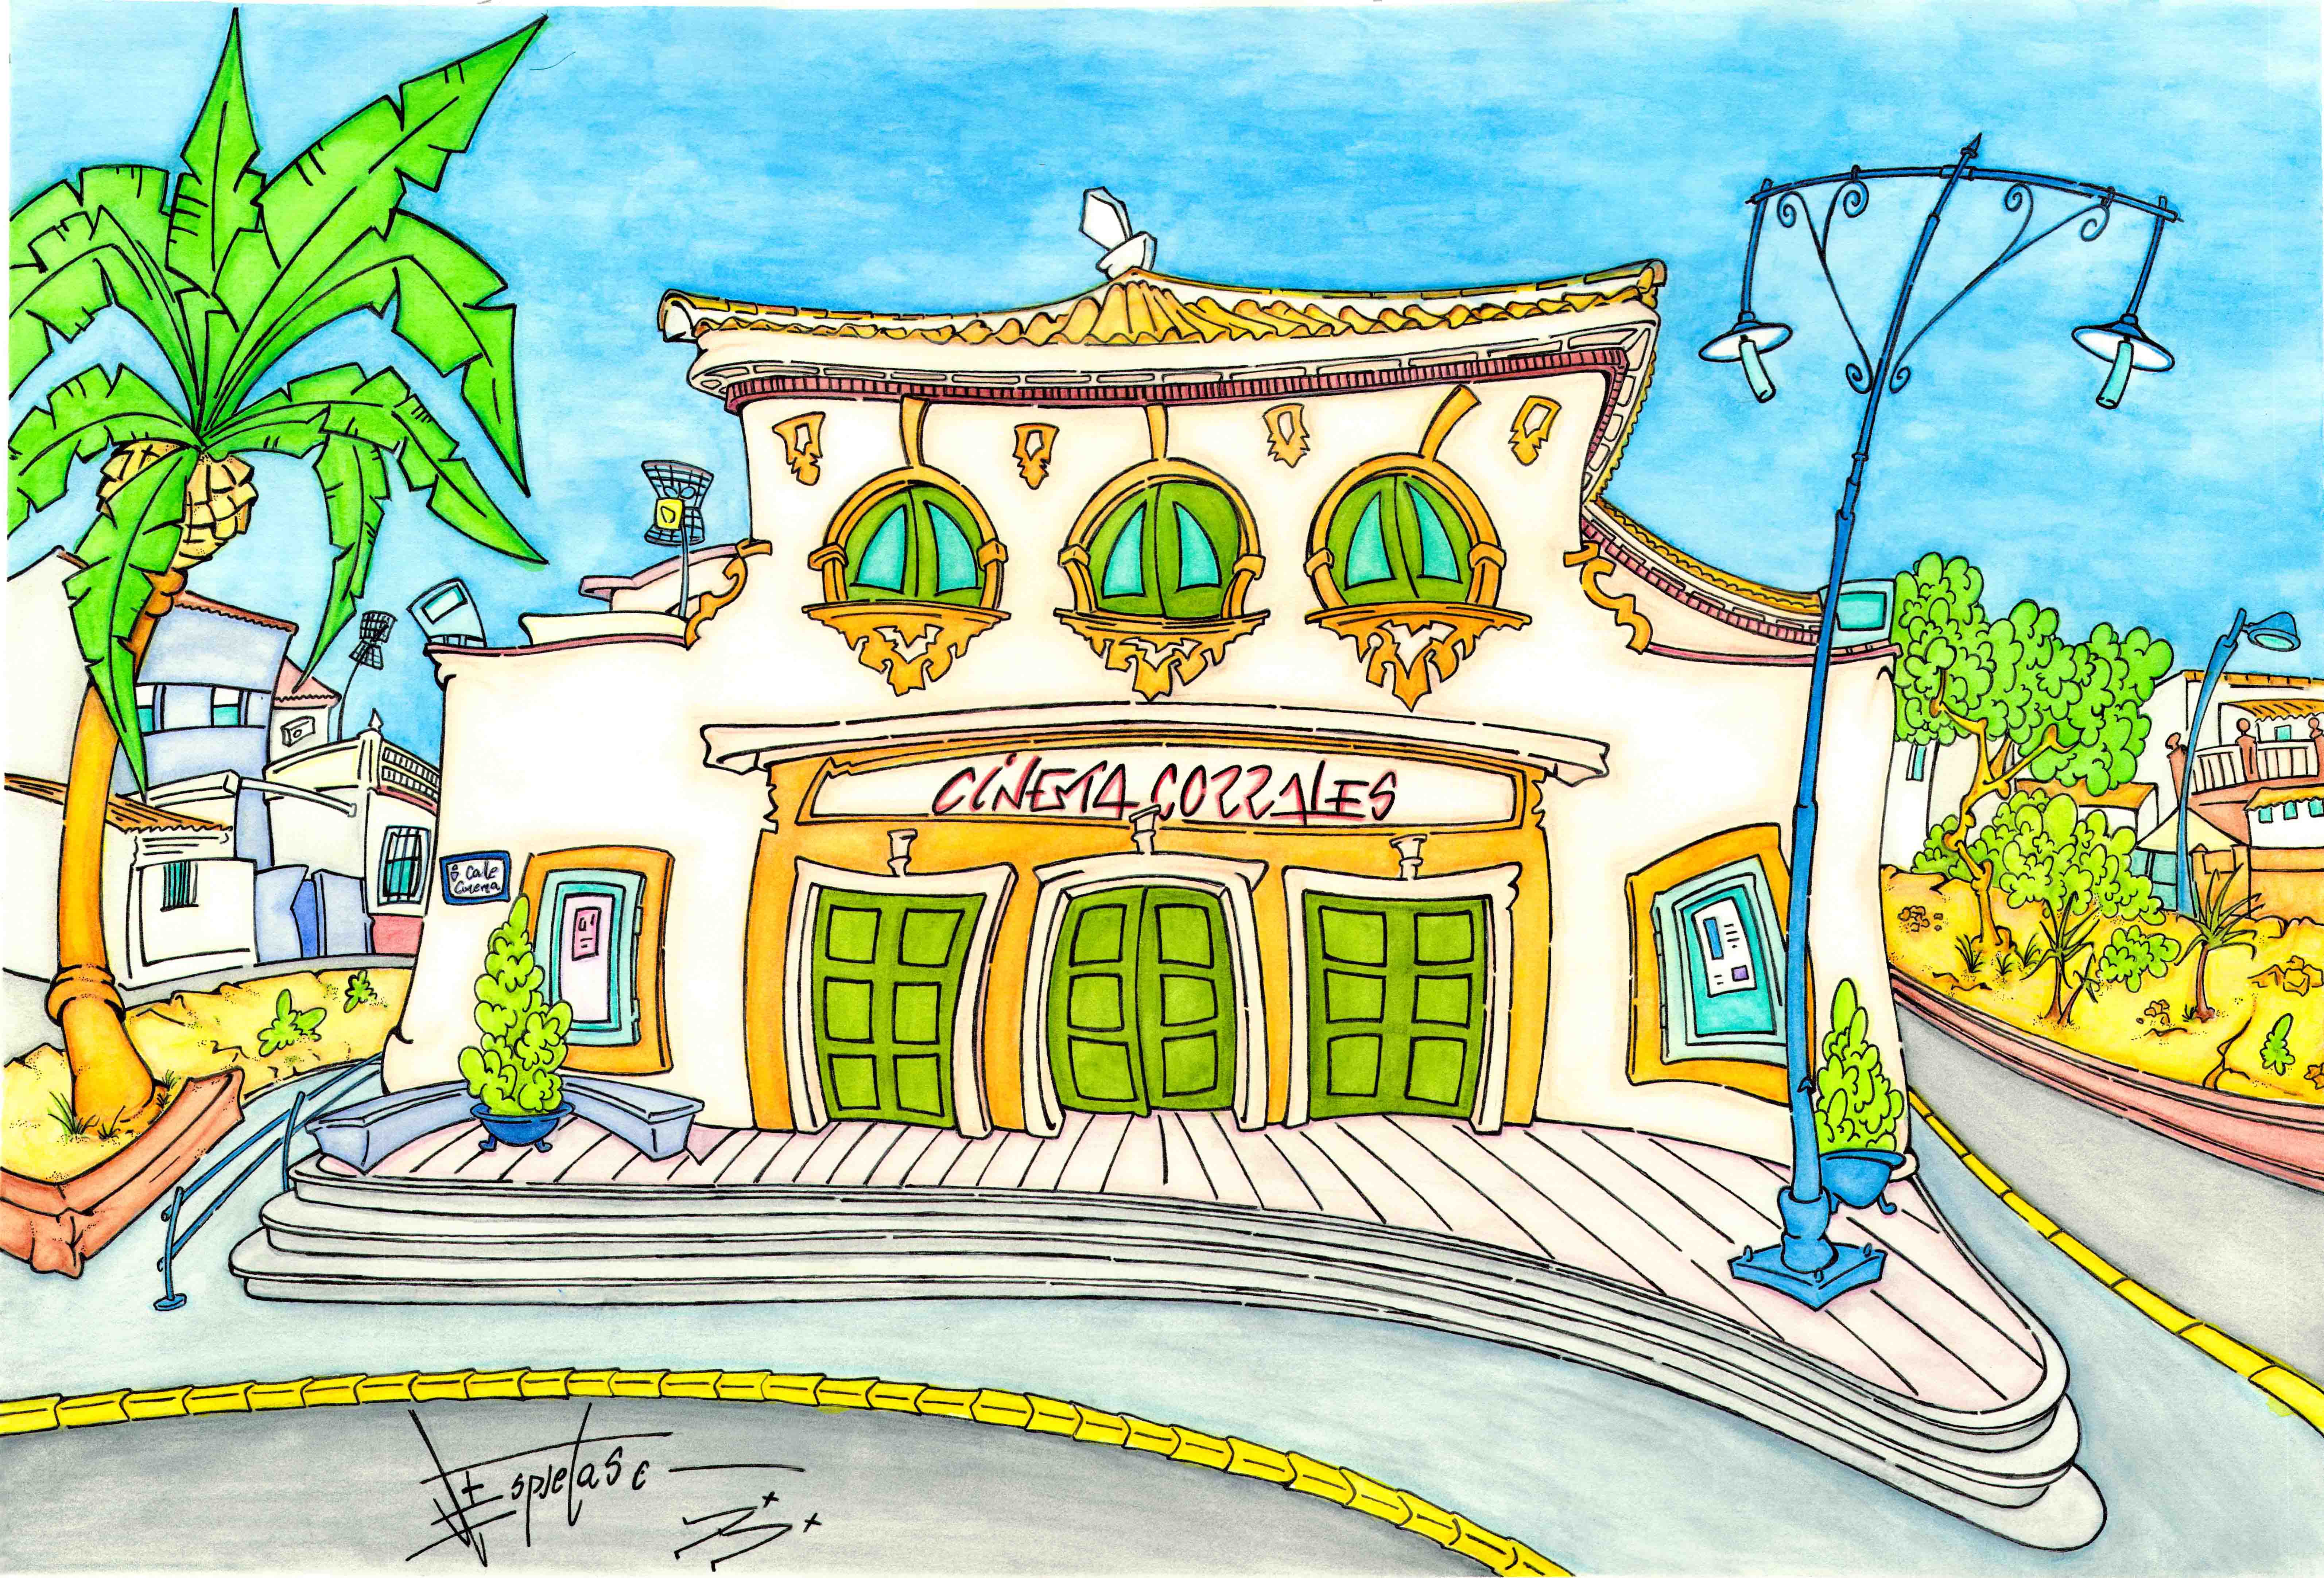 Teatro Cinema de Corrales